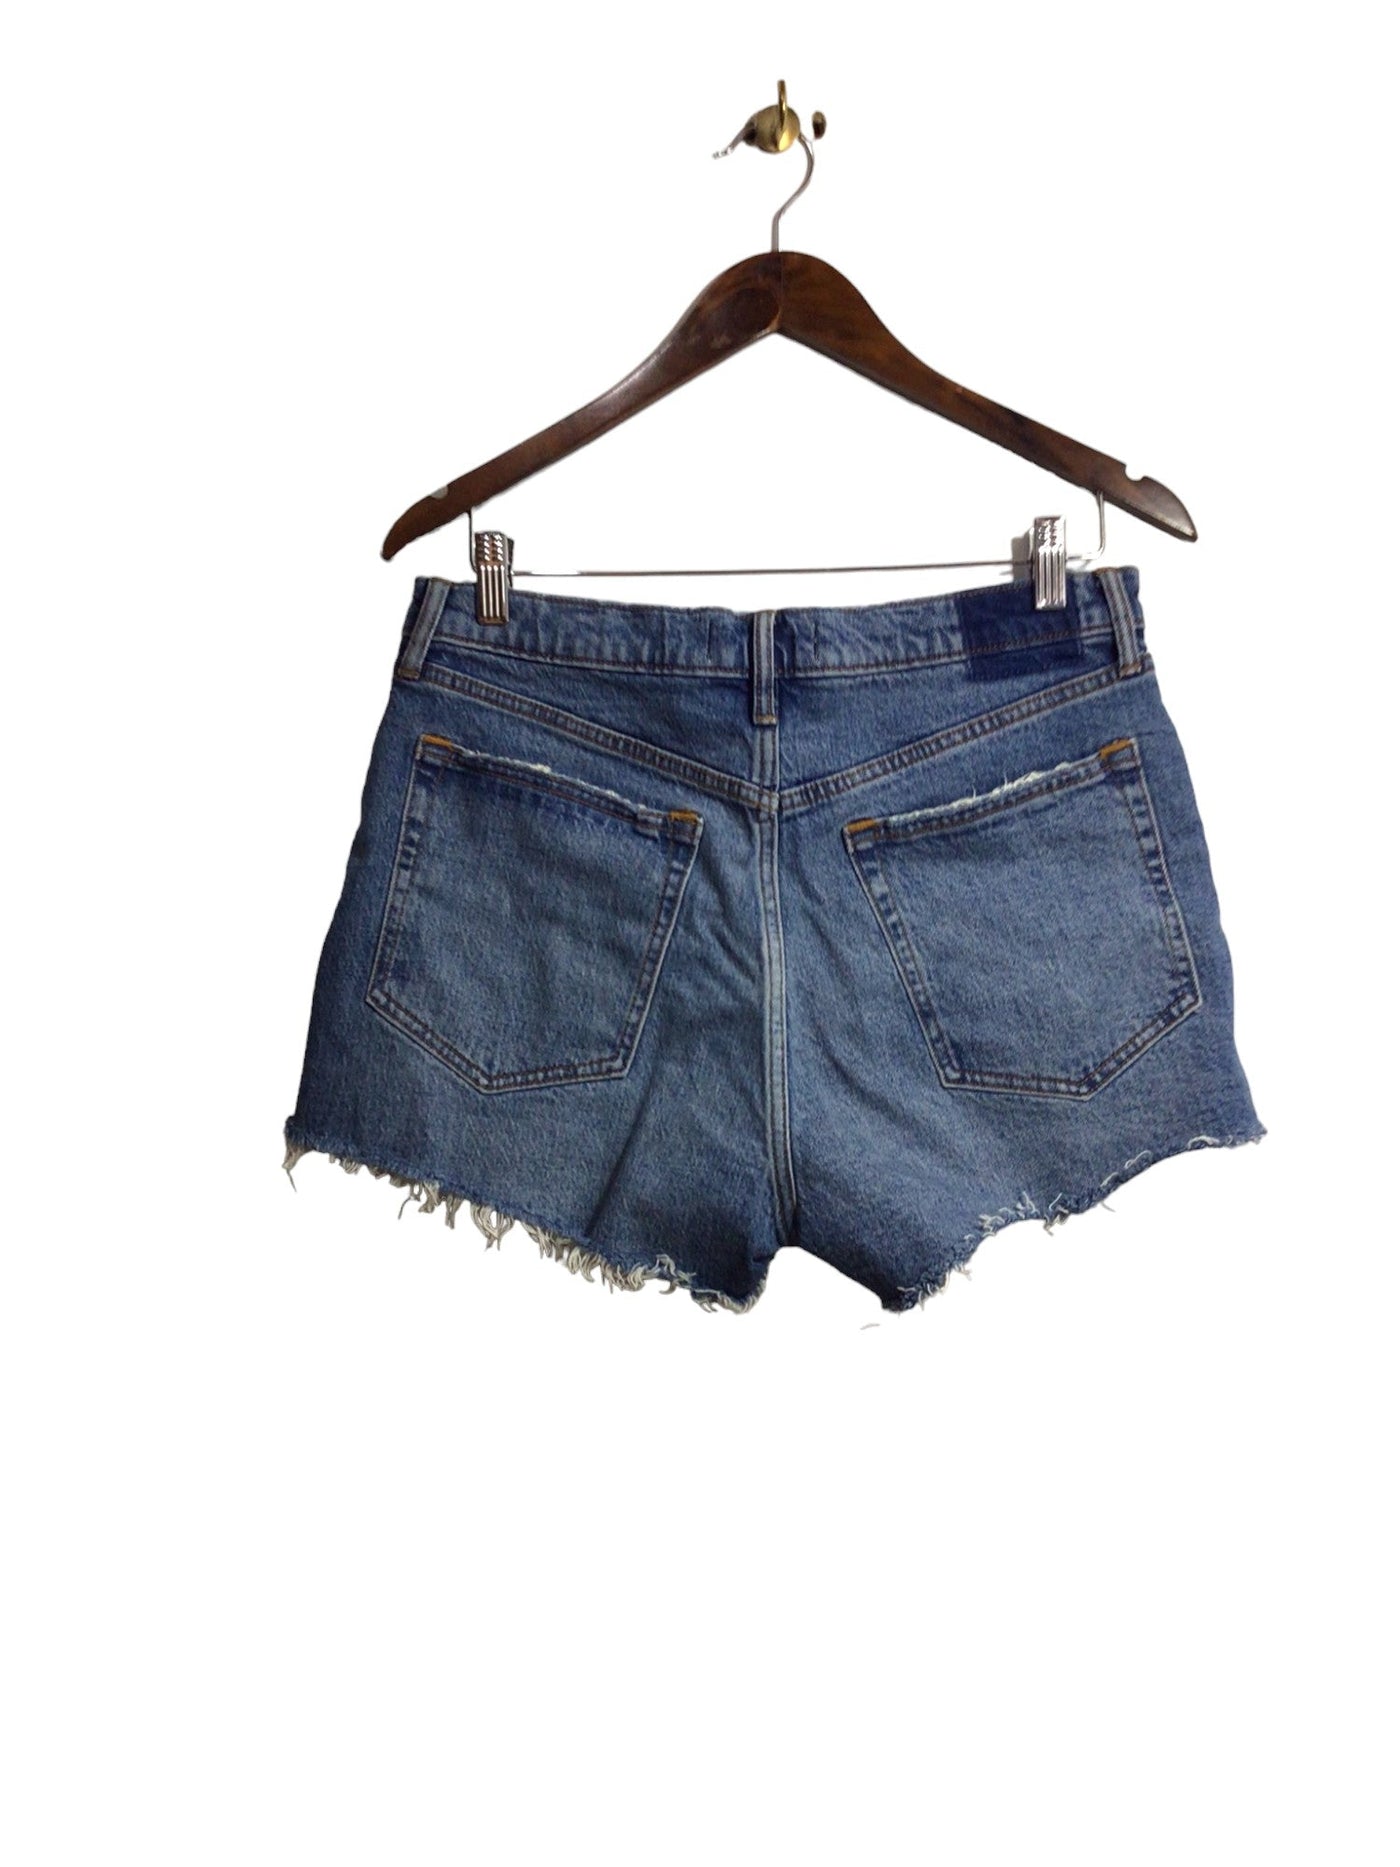 ABERCROMBIE & FITCH Women Denim Shorts Regular fit in Blue - Size 10 | 14.3 $ KOOP